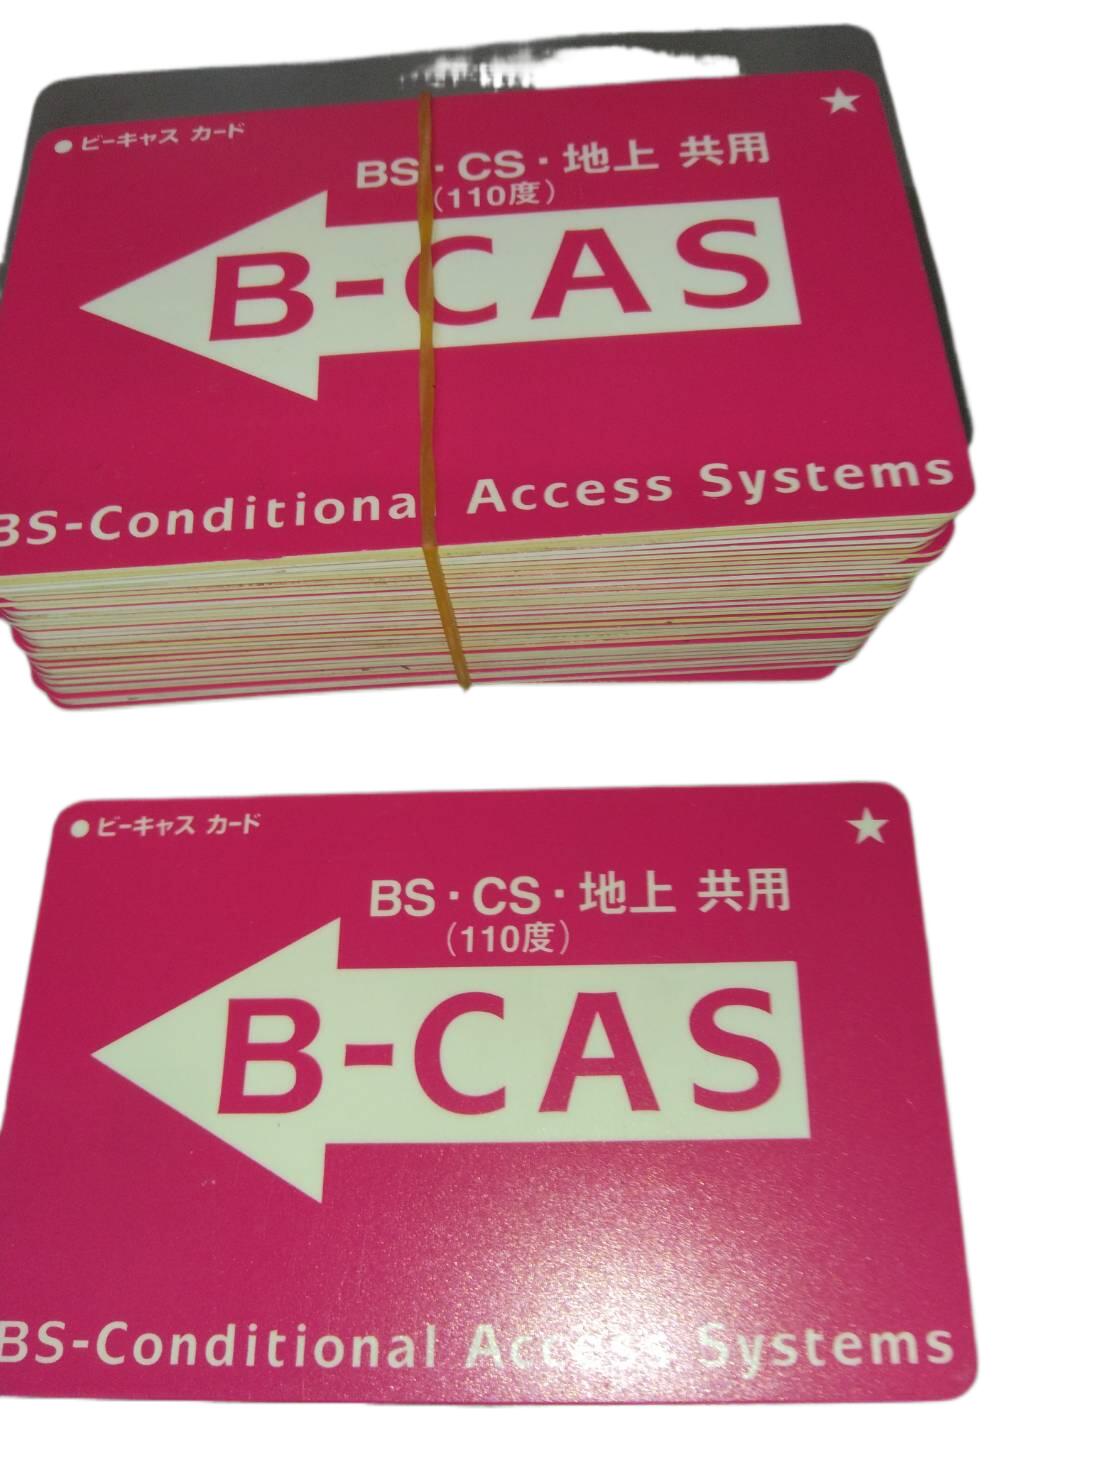 B-CASカード T 赤 テレビカード BDありの記号並び品 1枚の価格です 【 中古 】在庫豊富あります【アンテナ 風で動く可能性ありです もう一度チェックください】 B-CAS カード b-casカード b-cas ビーキャスカード テレビ 受信 地デジ BS CS b cas bcas のみ 東芝